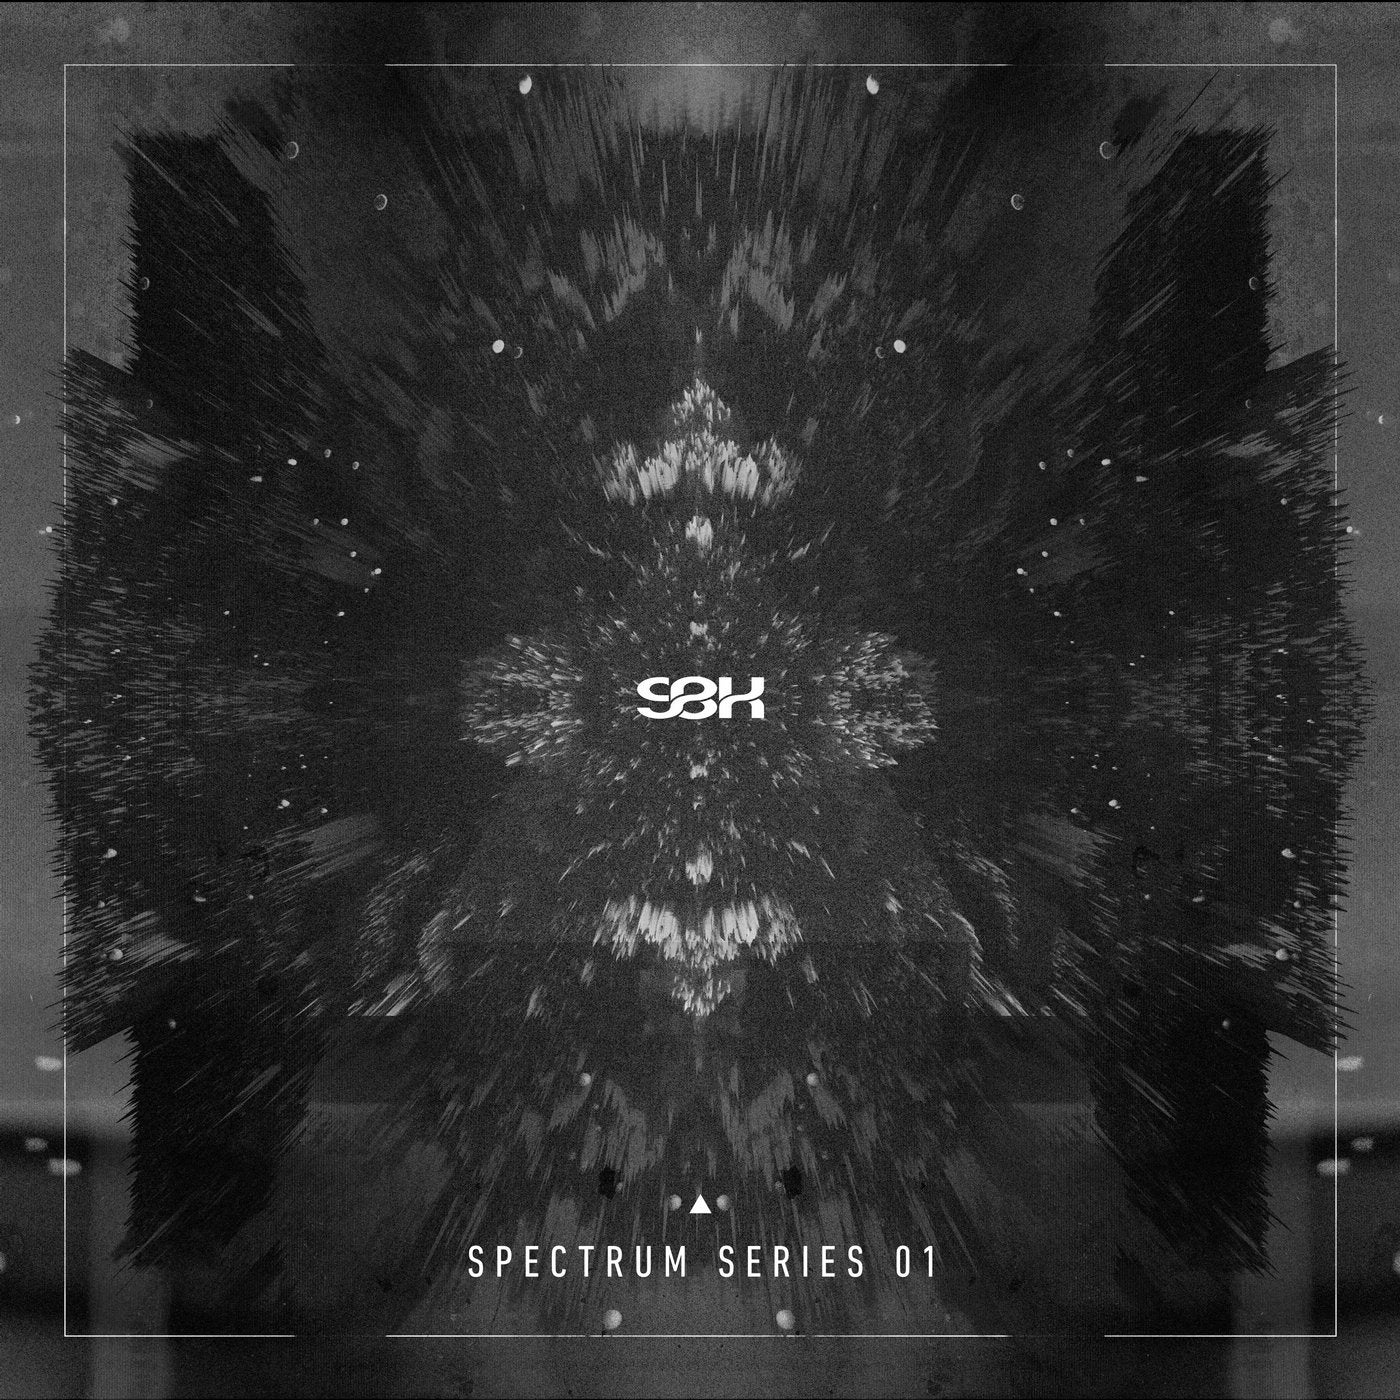 Spectrum Series 01